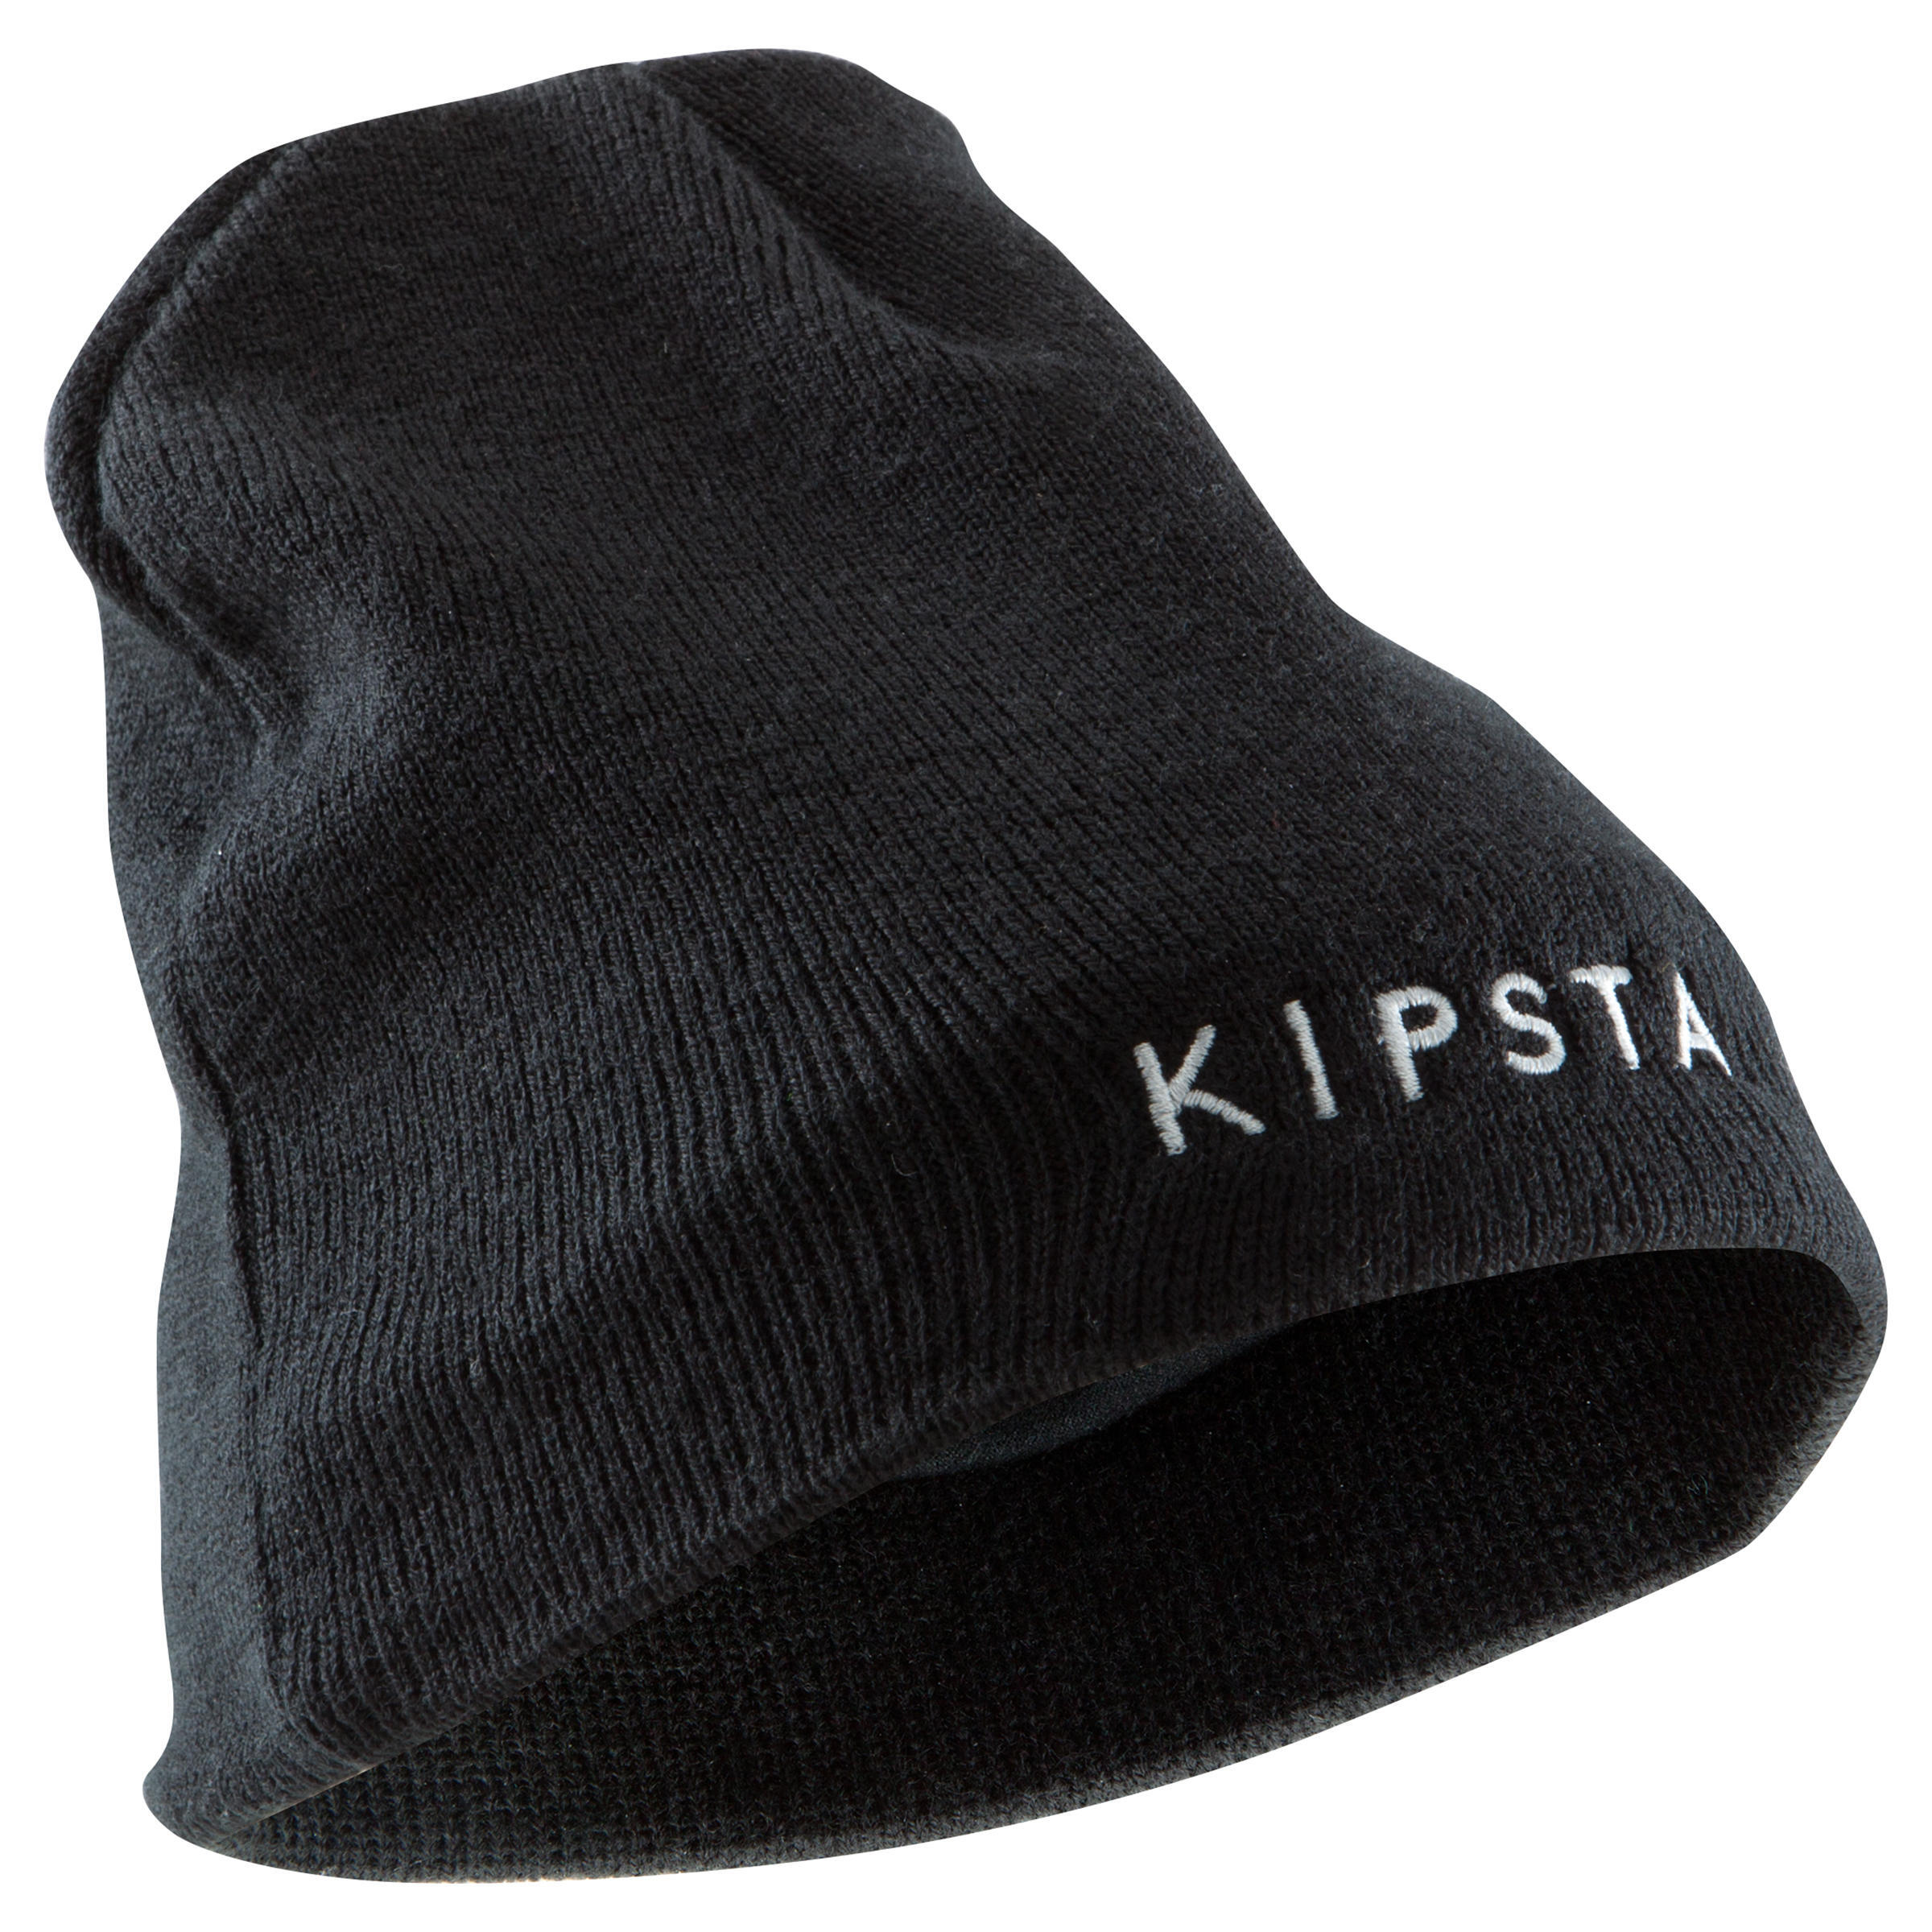 KIPSTA Kids' Football Hat Keepwarm - Black